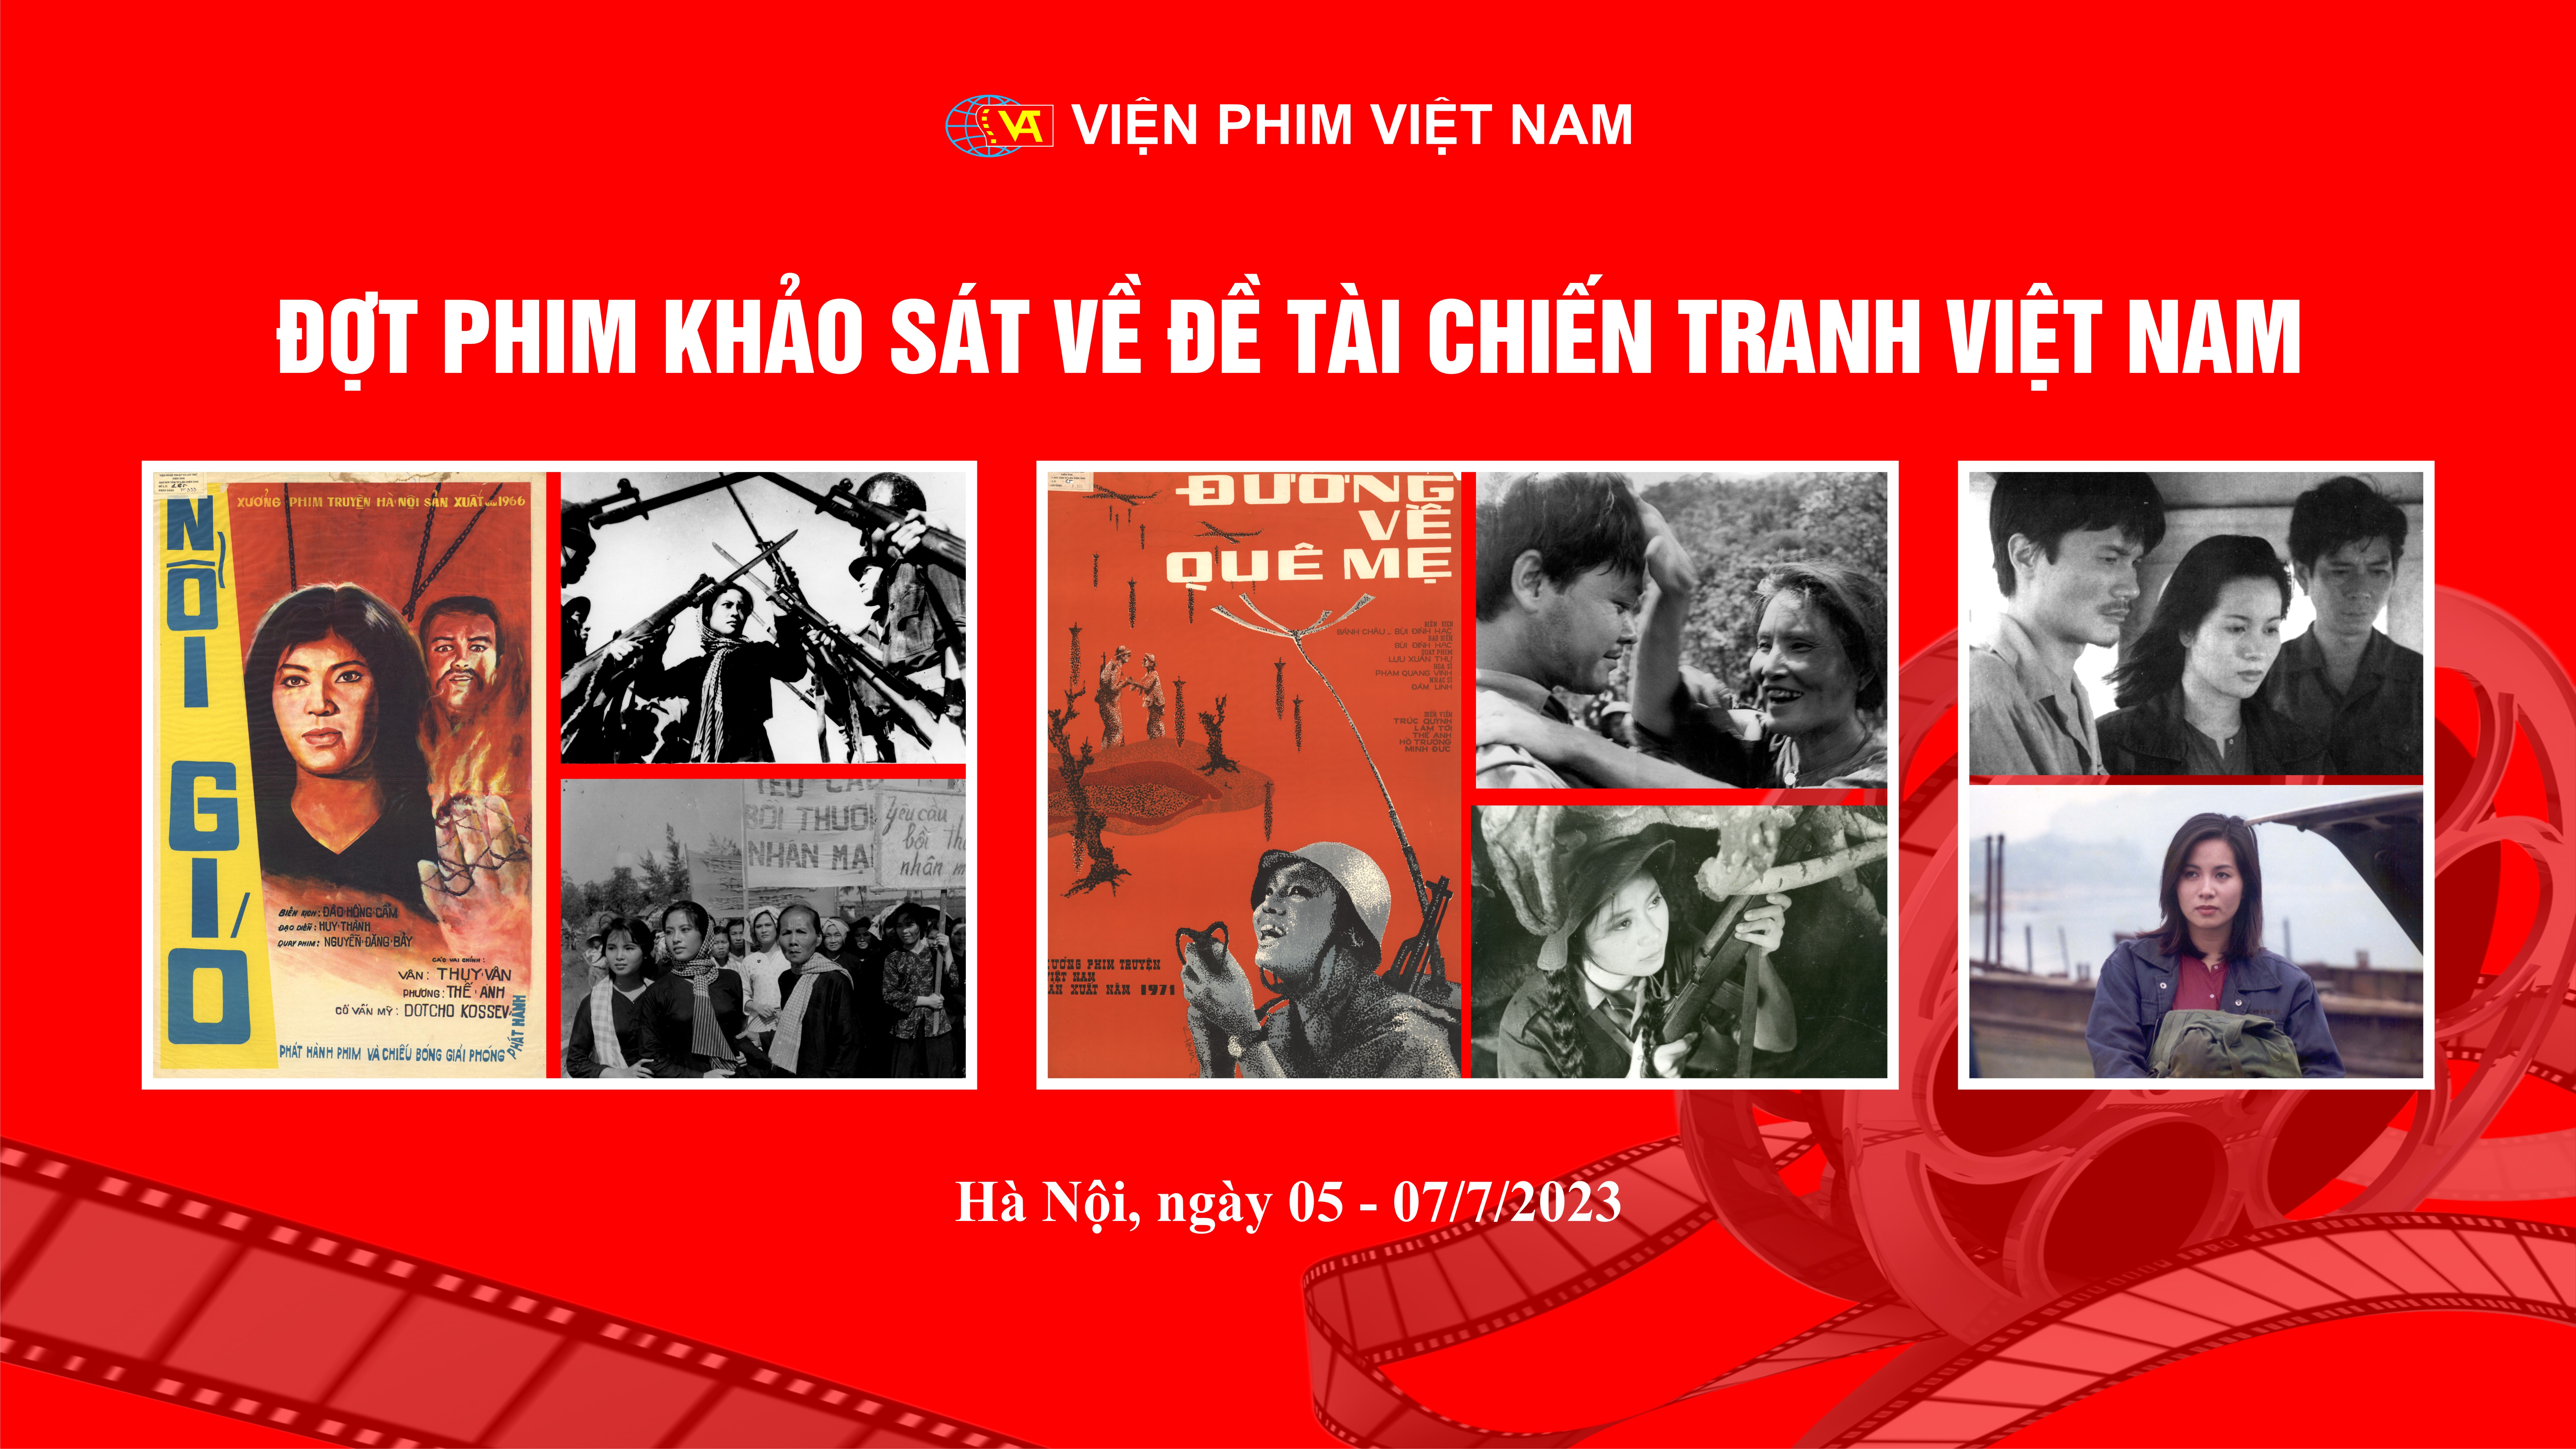 Viện Phim Việt Nam tổ chức Hội nghị Sơ kết công tác 6 tháng đầu năm và triển khai công tác 6 tháng cuối năm 2023